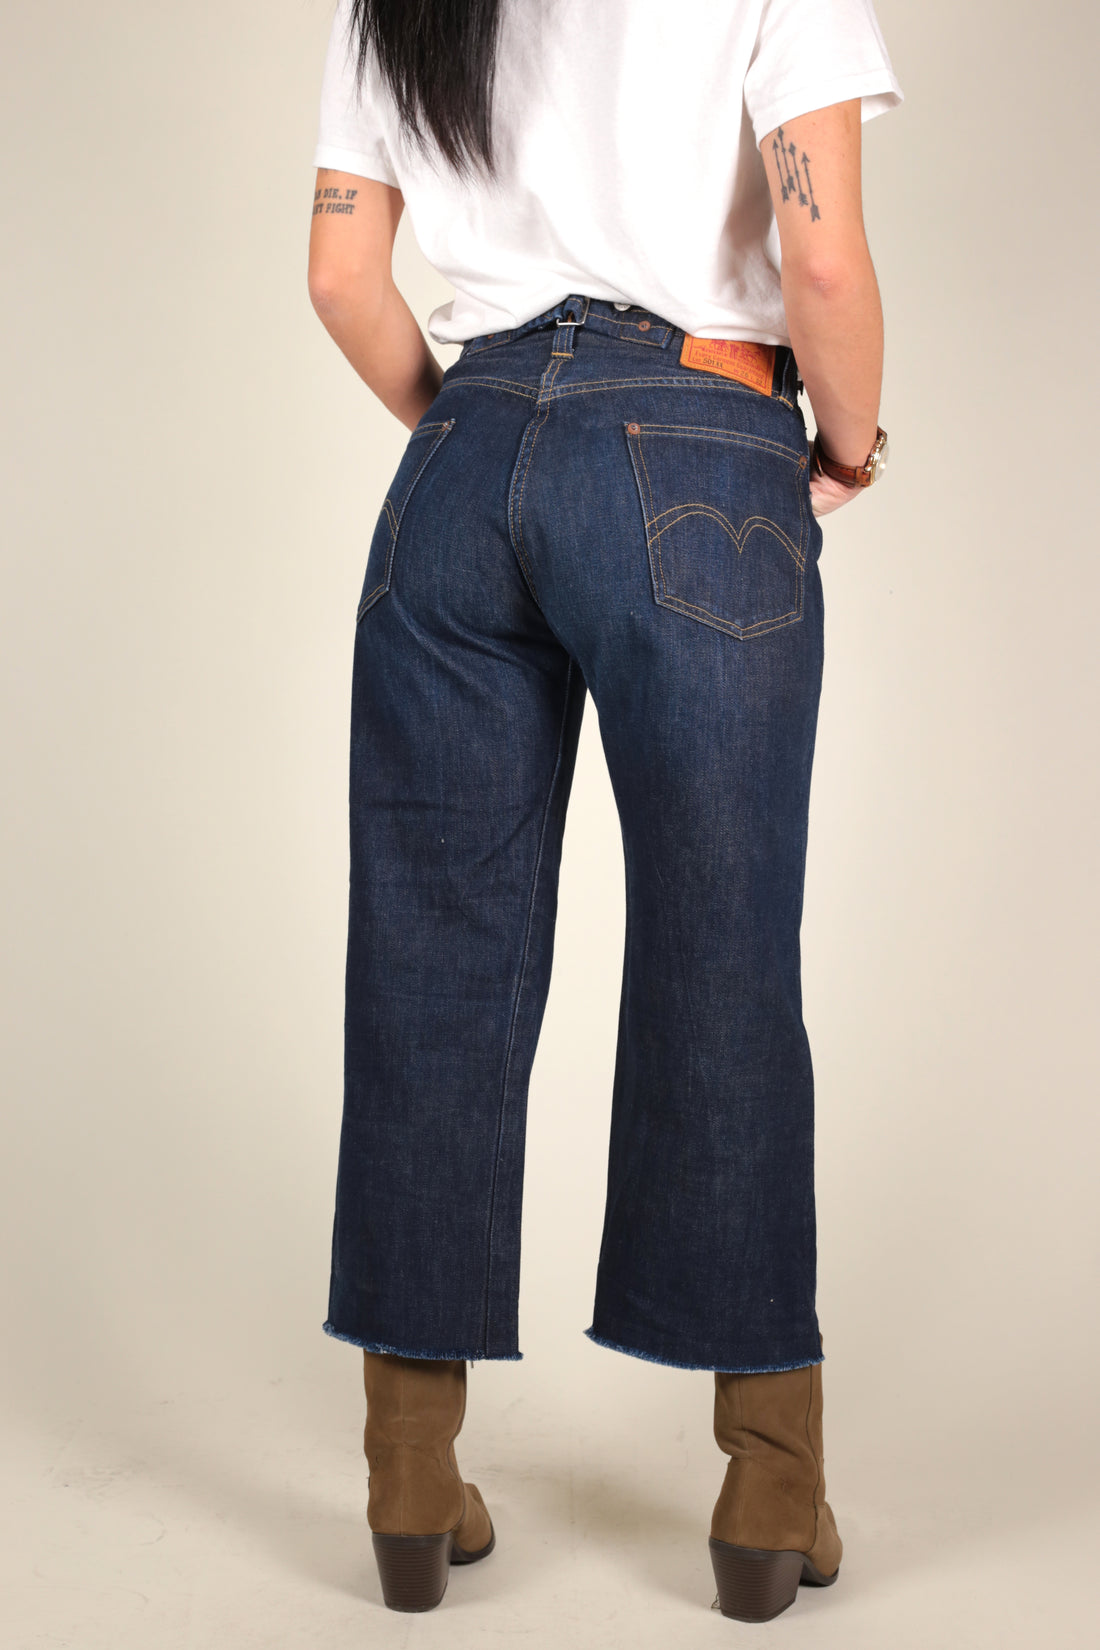 levis jeans 501 XX